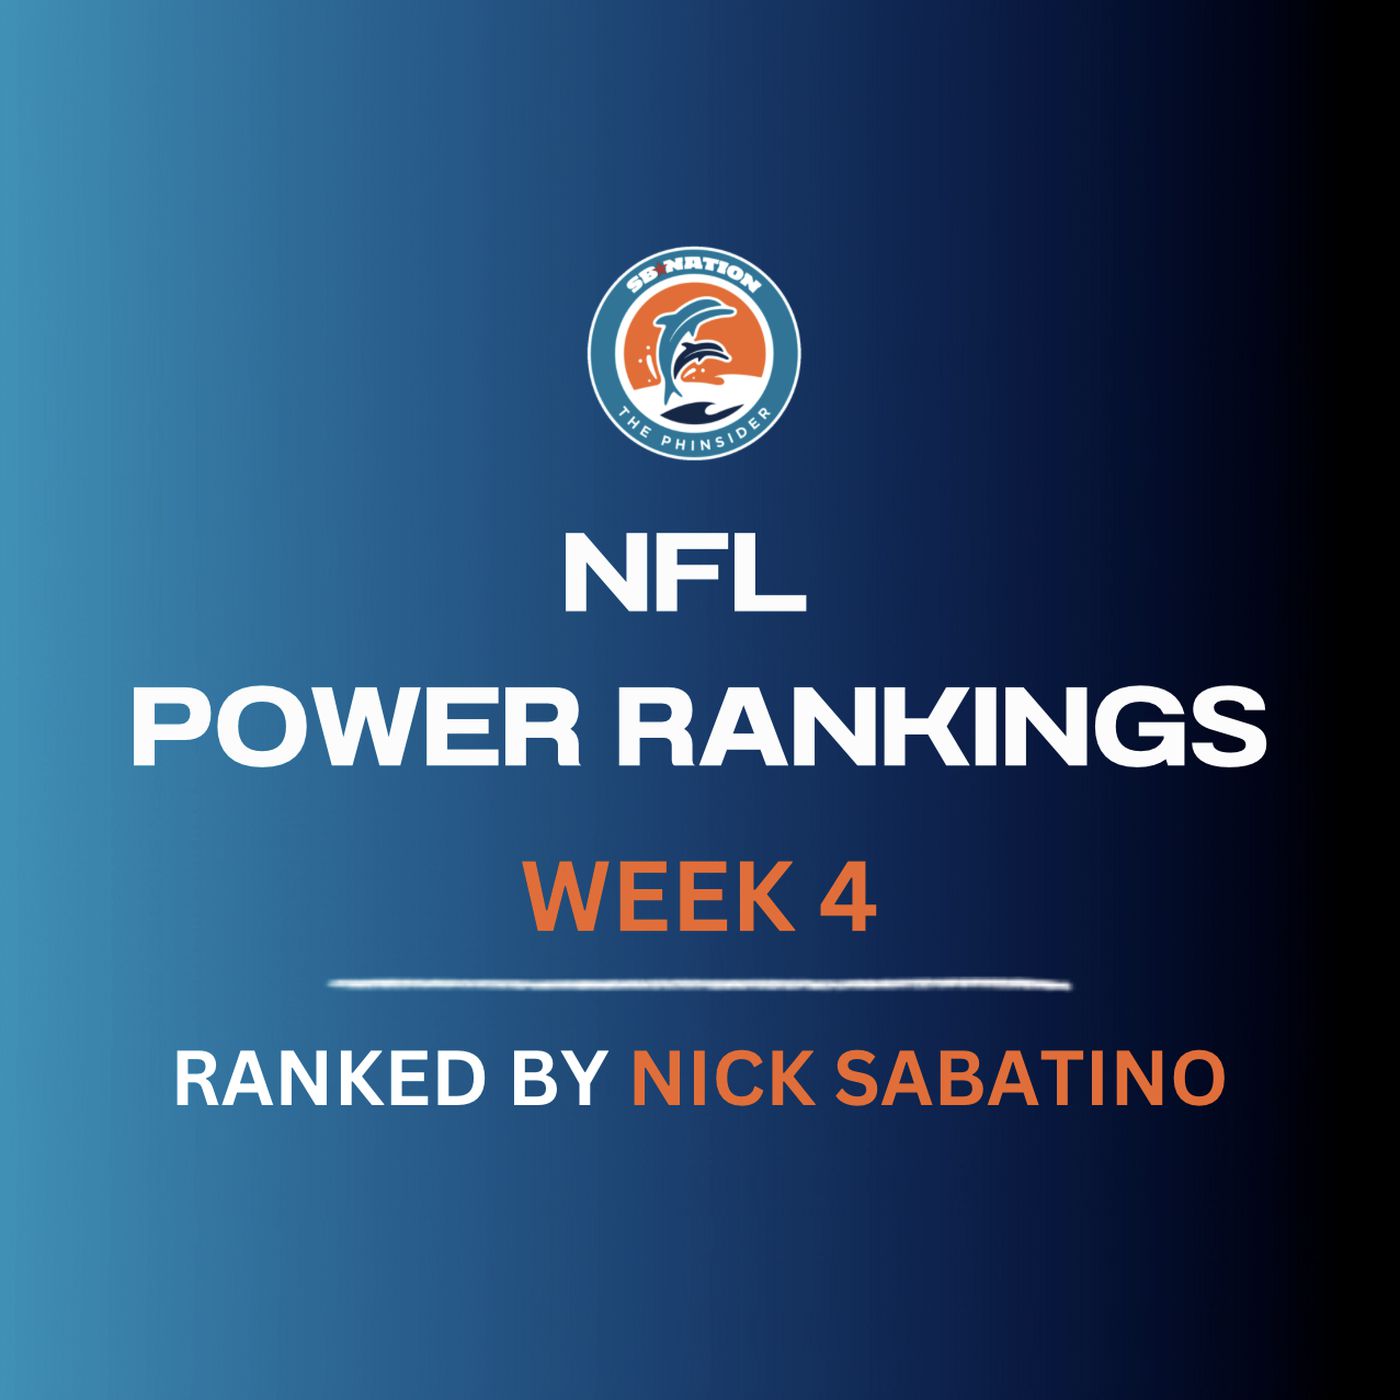 defense rankings week 4 fantasy